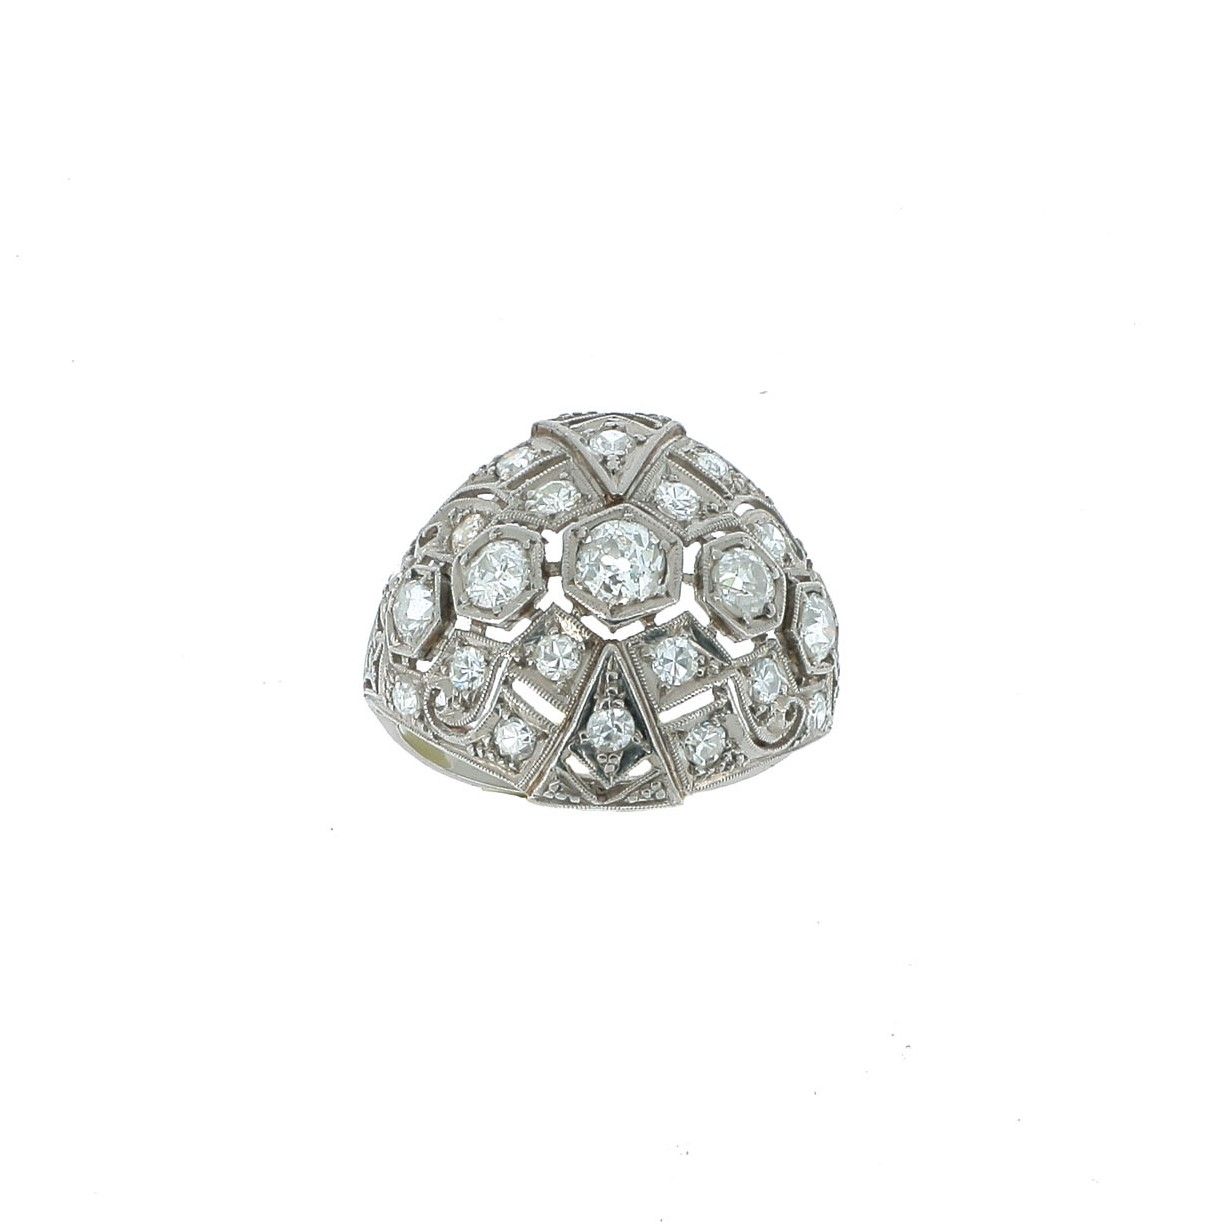 Null 炸弹戒指

铂金材质，镂空几何图案，镶有钻石。

约1920年。

一枚钻石和铂金戒指，约1920年。



RC。

TDD：57-58，US：8 &hellip;